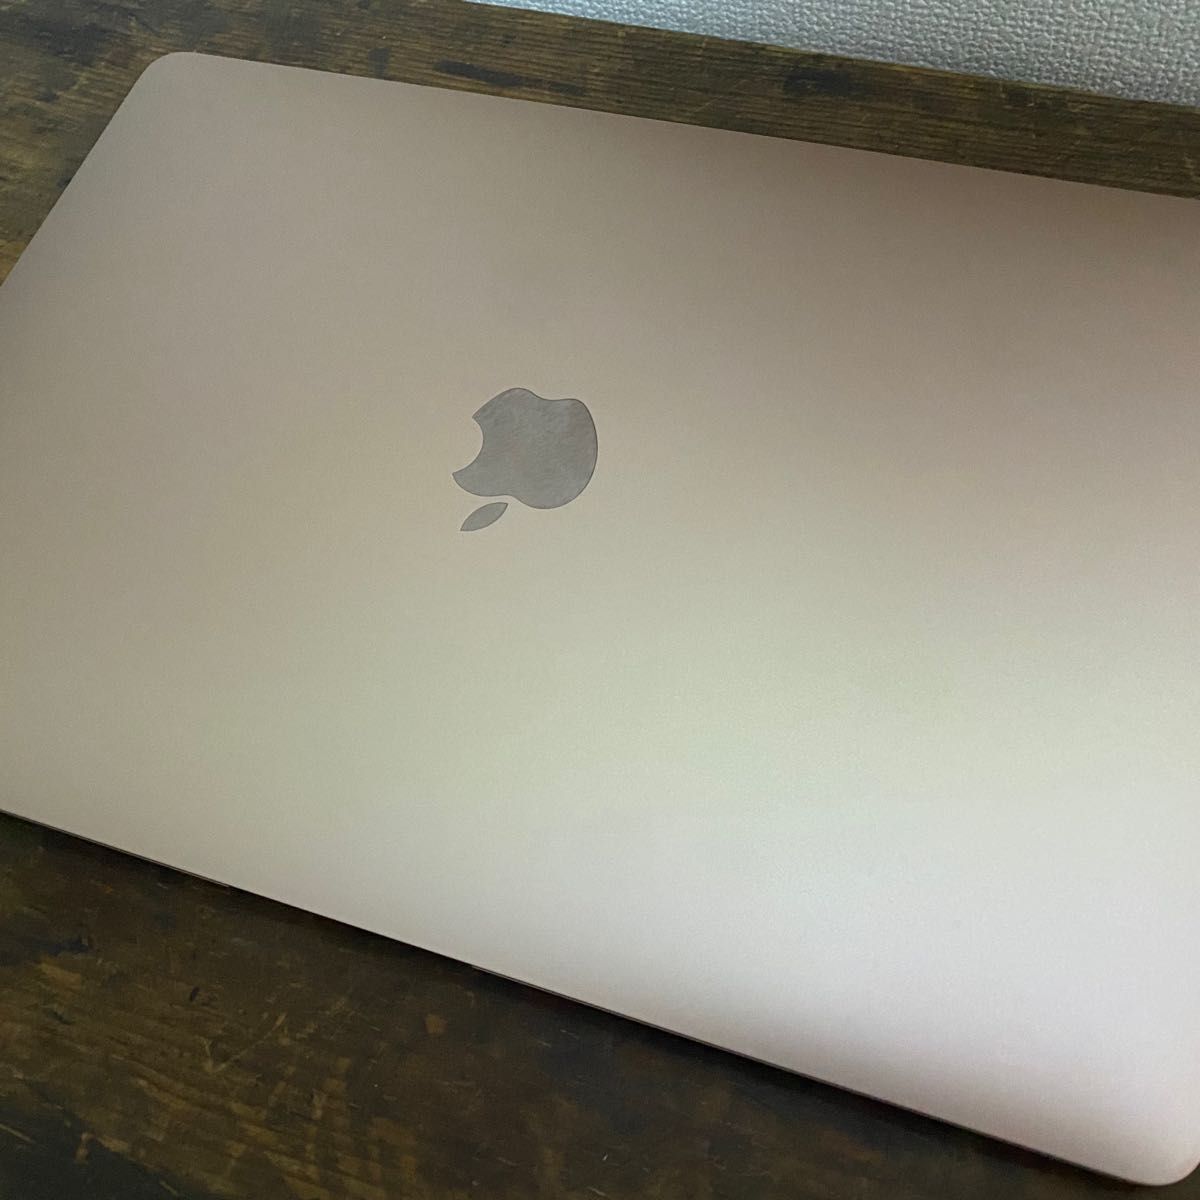 MacBook Air 2018 